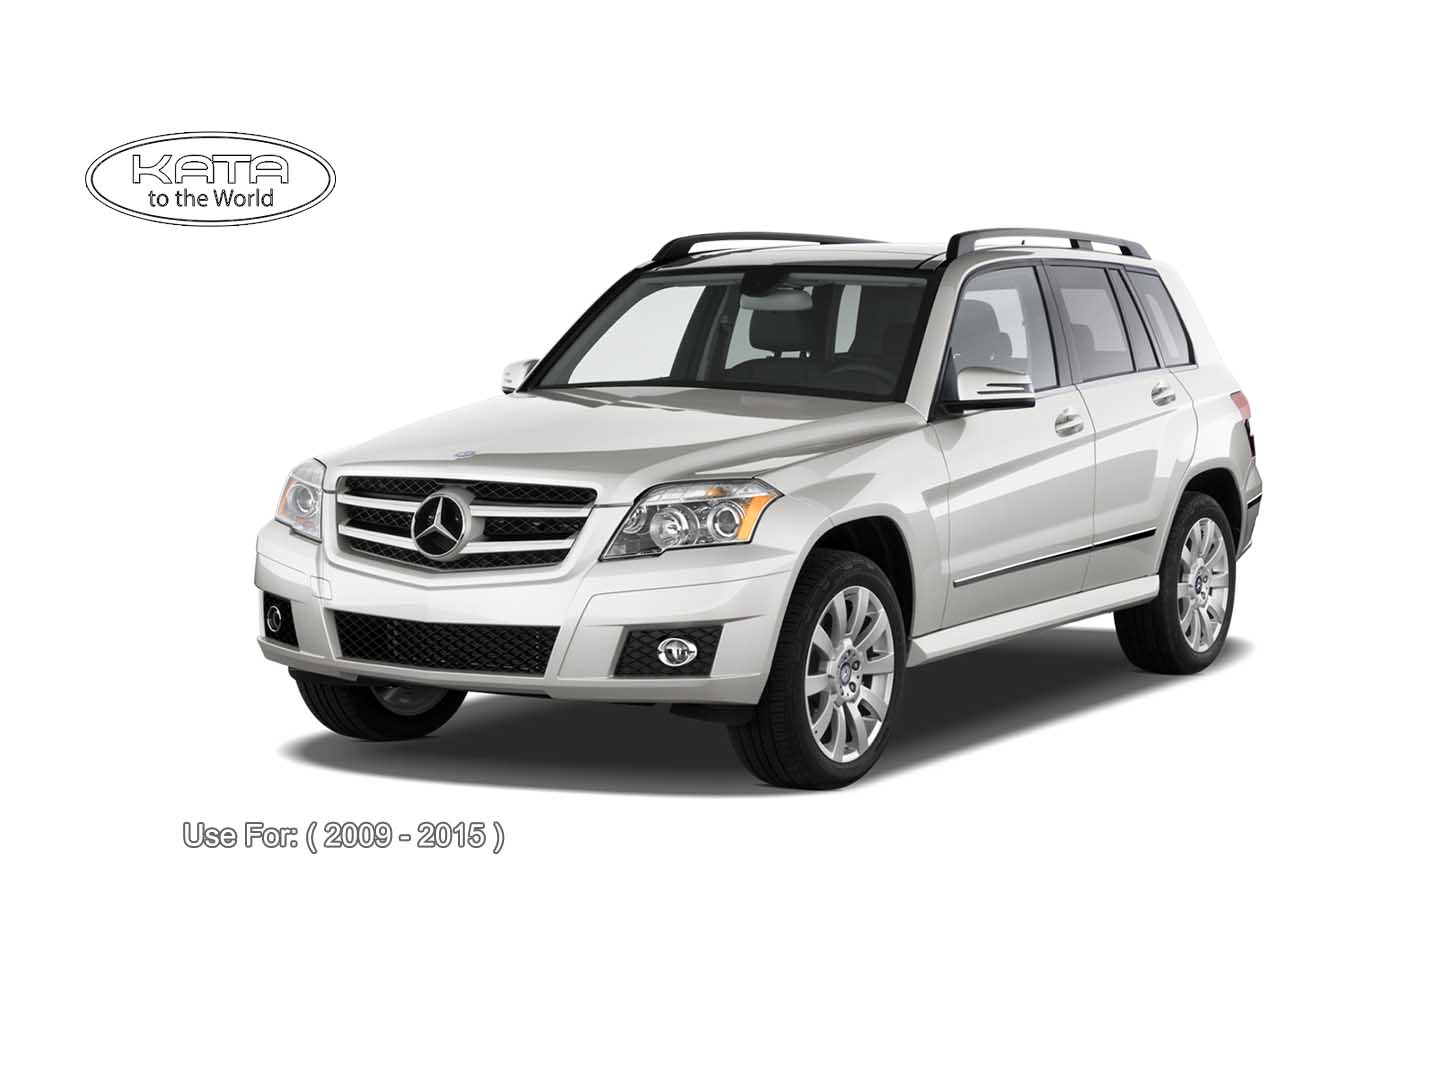 Đánh giá xe Mercedes GLK 2013 tiện nghi sang trọng